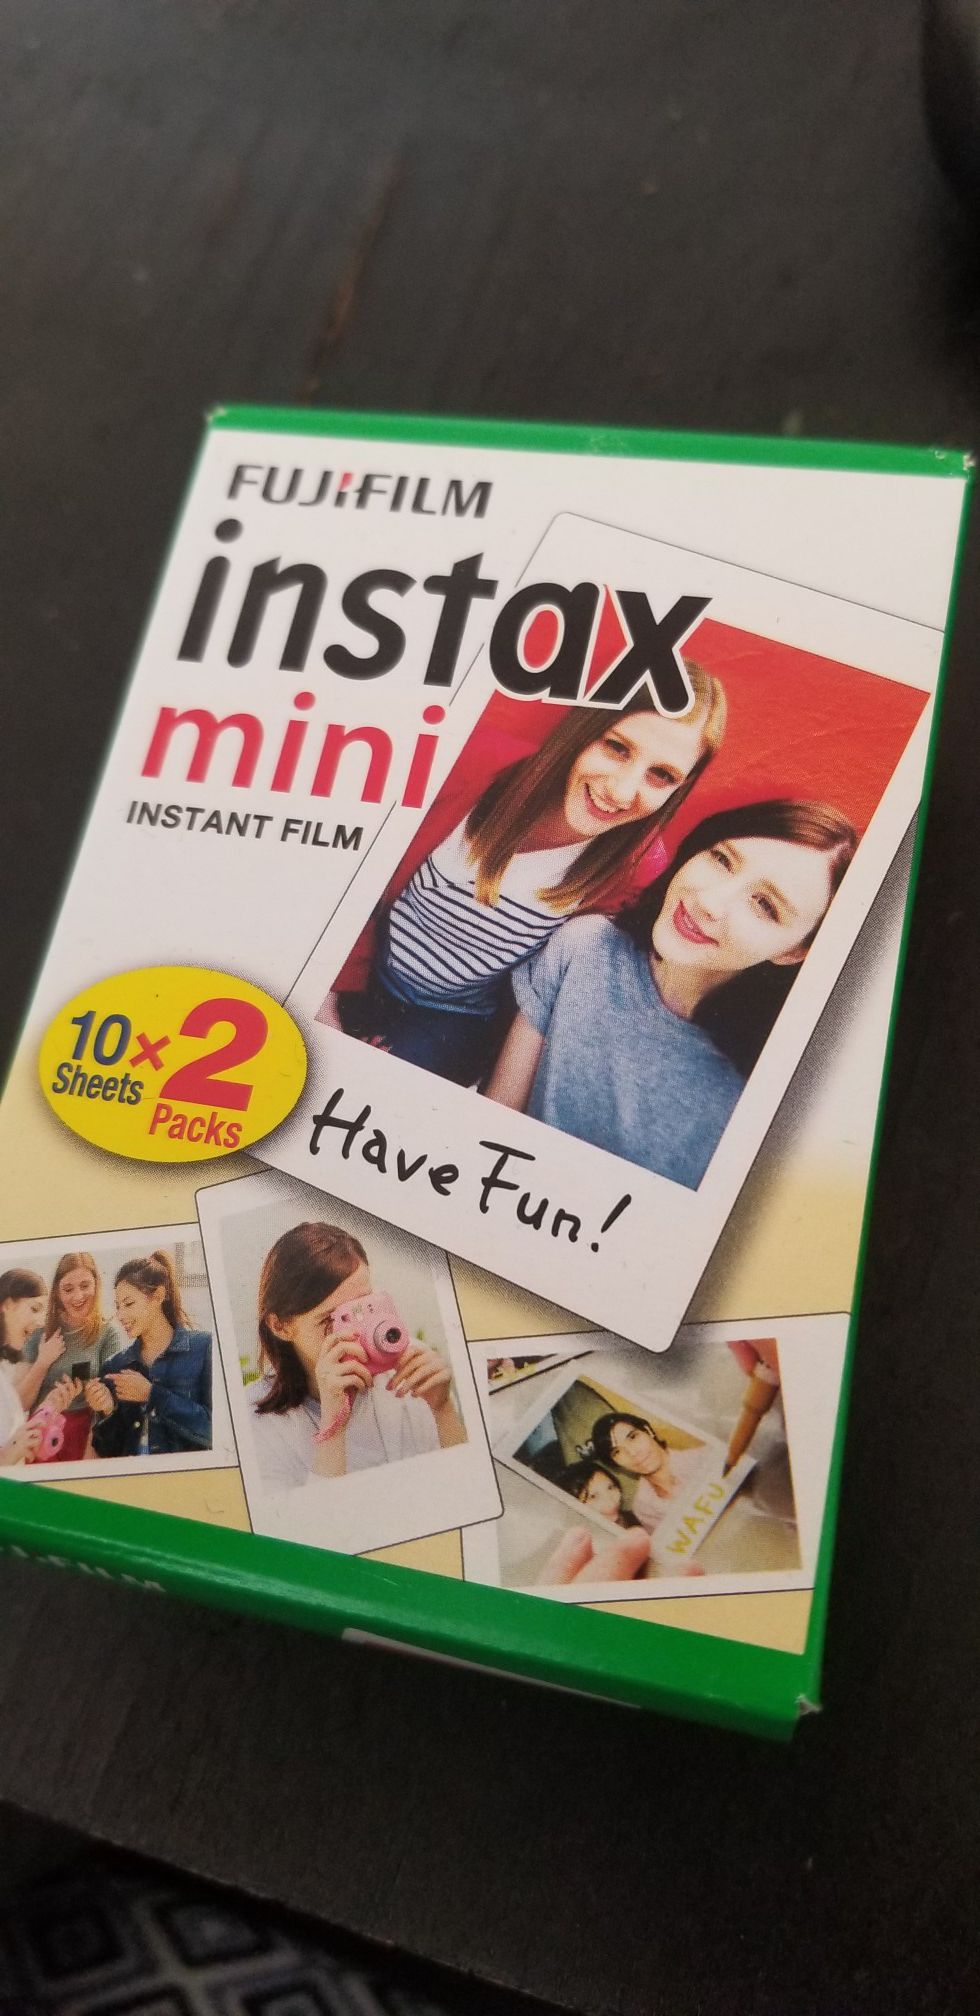 Fujifilm Instax Mini Film 10x2 per box